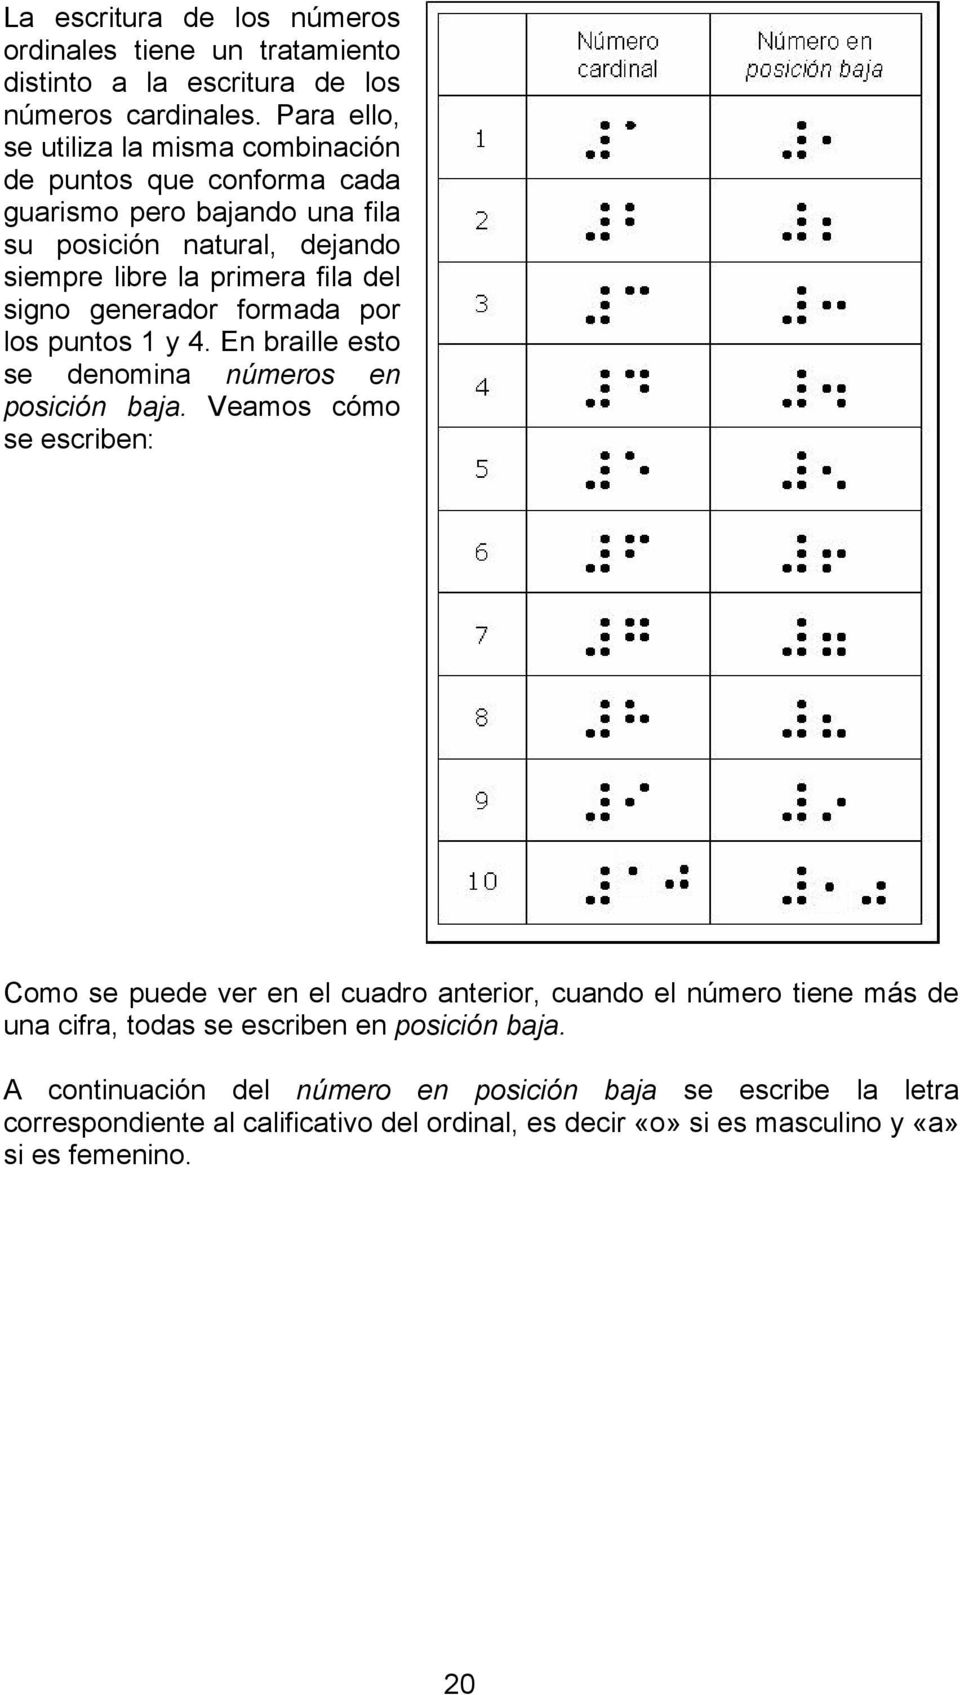 signo generador formada por los puntos 1 y 4. En braille esto se denomina números en posición baja.